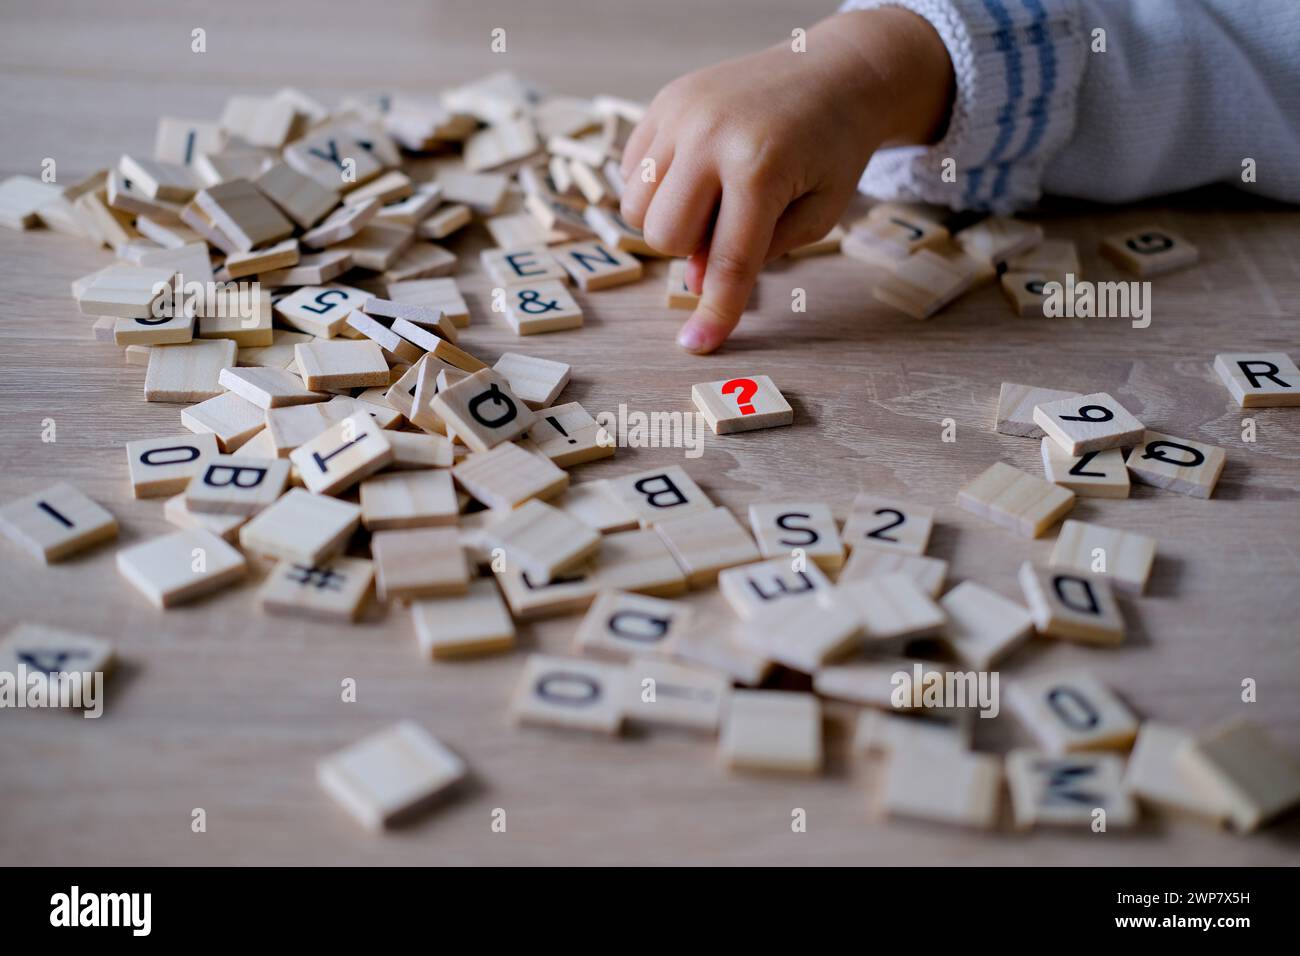 Hände aus der Nähe, kleines Kind 3 Jahre alt spielt hölzerne Alphabetblöcke, macht Wörter aus Buchstaben, Legasthenie-Bewusstsein, Lernschwierigkeiten, menschliches br Stockfoto